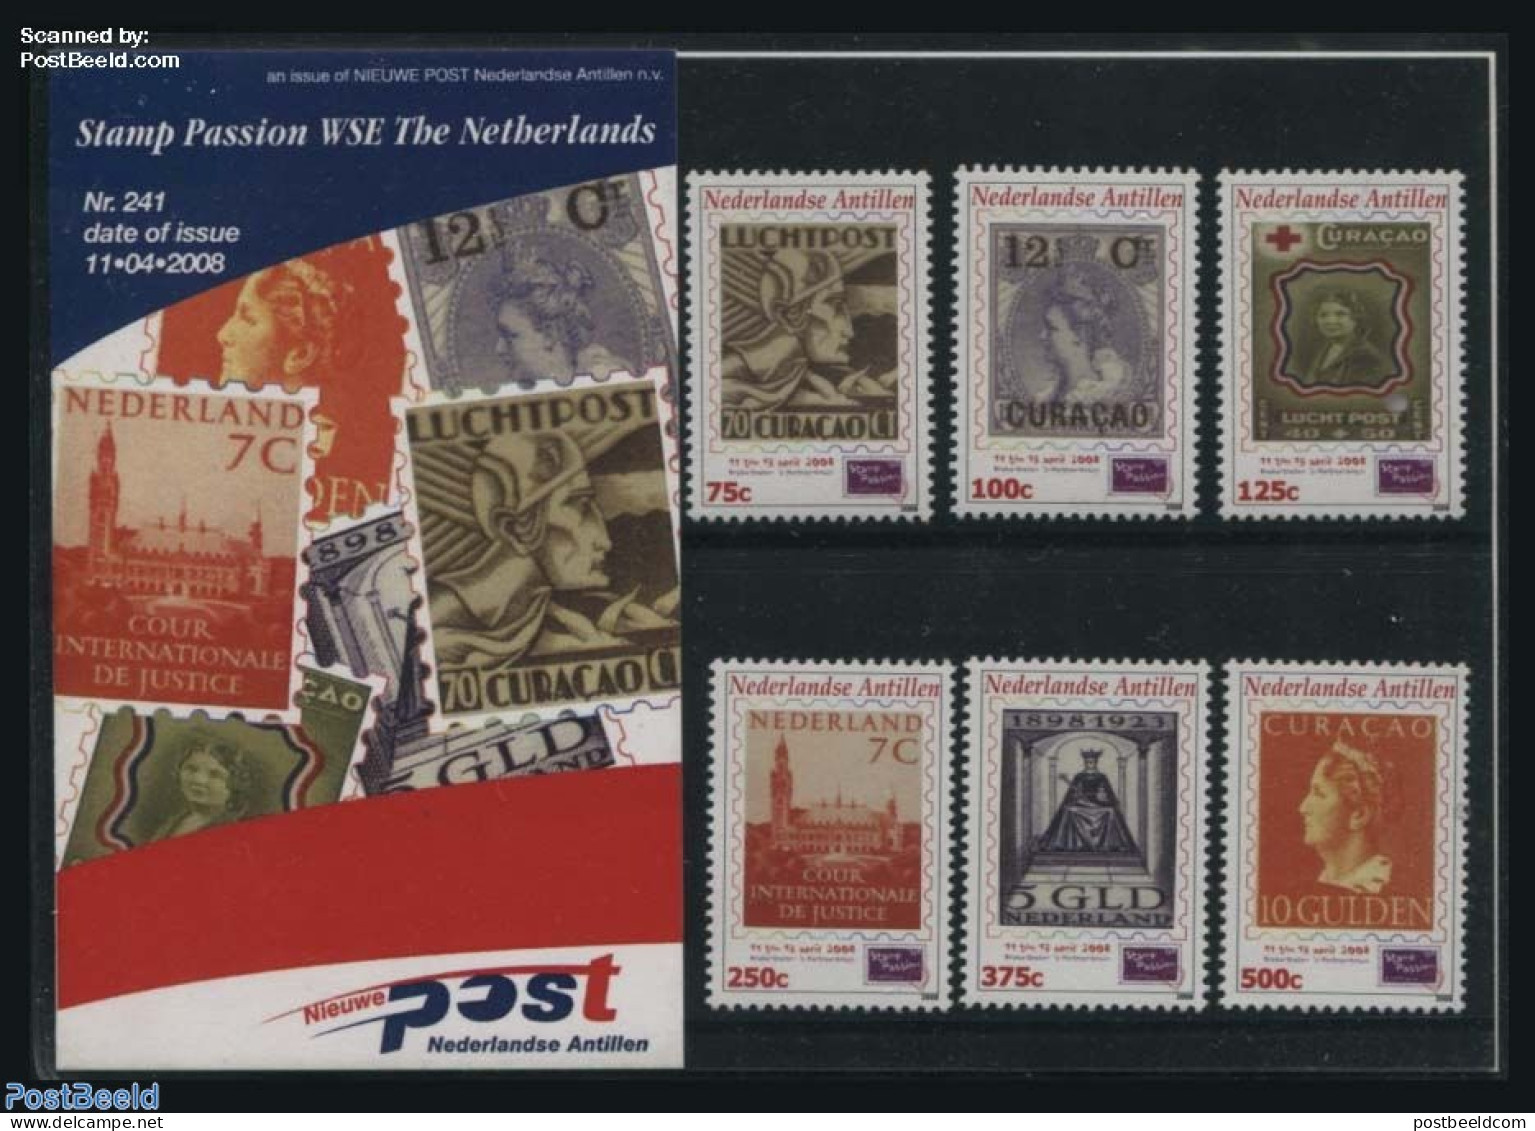 Netherlands Antilles 2008 Stamp Passion, Presentation Pack 241, Mint NH, Stamps On Stamps - Stamps On Stamps